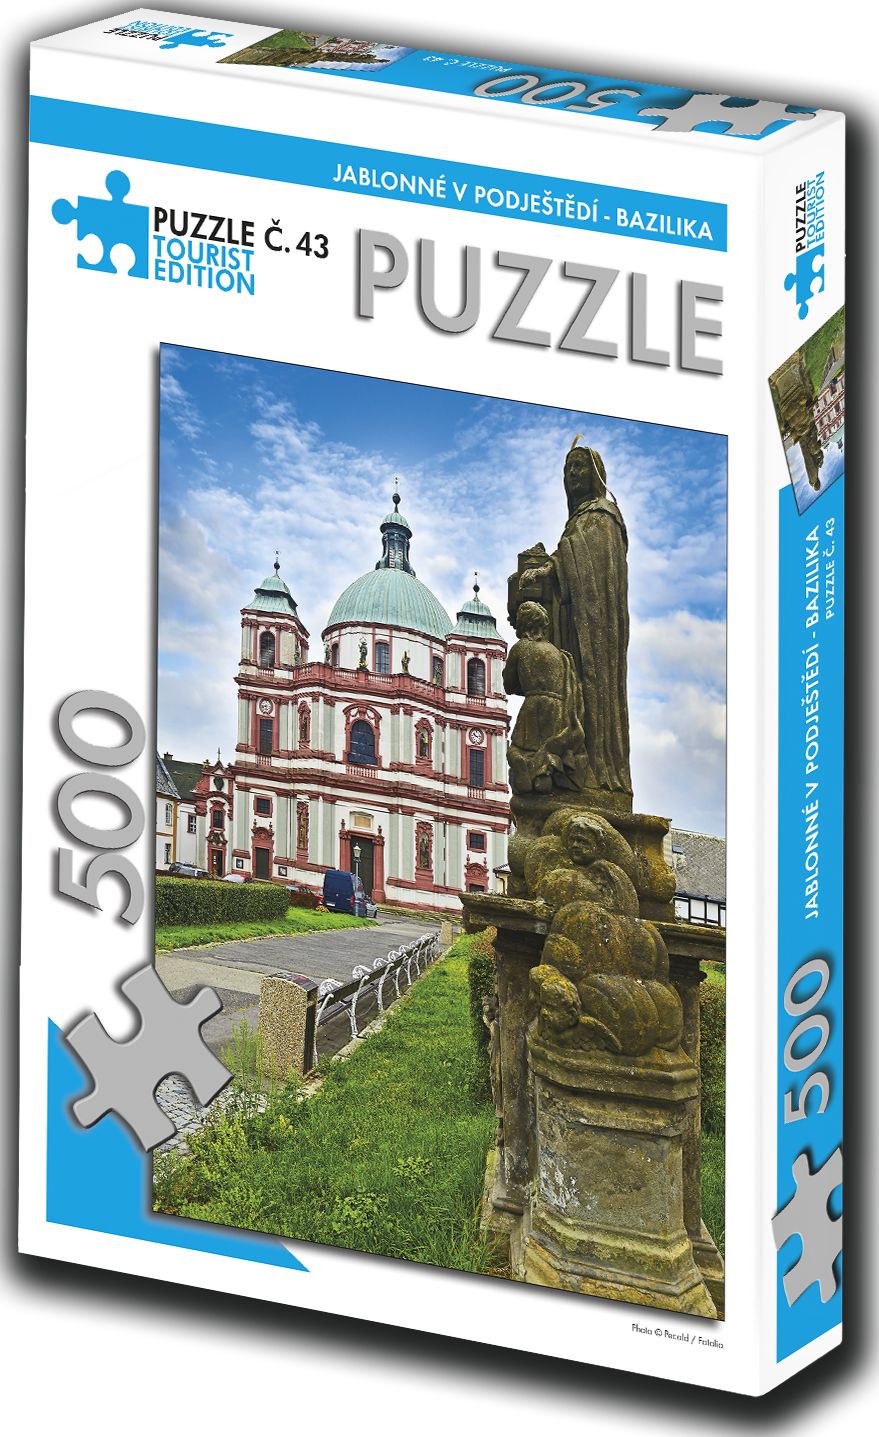 TOURIST EDITION Puzzle Jablonné v Podještědí, bazilika 500 dílků (č.43) - obrázek 1